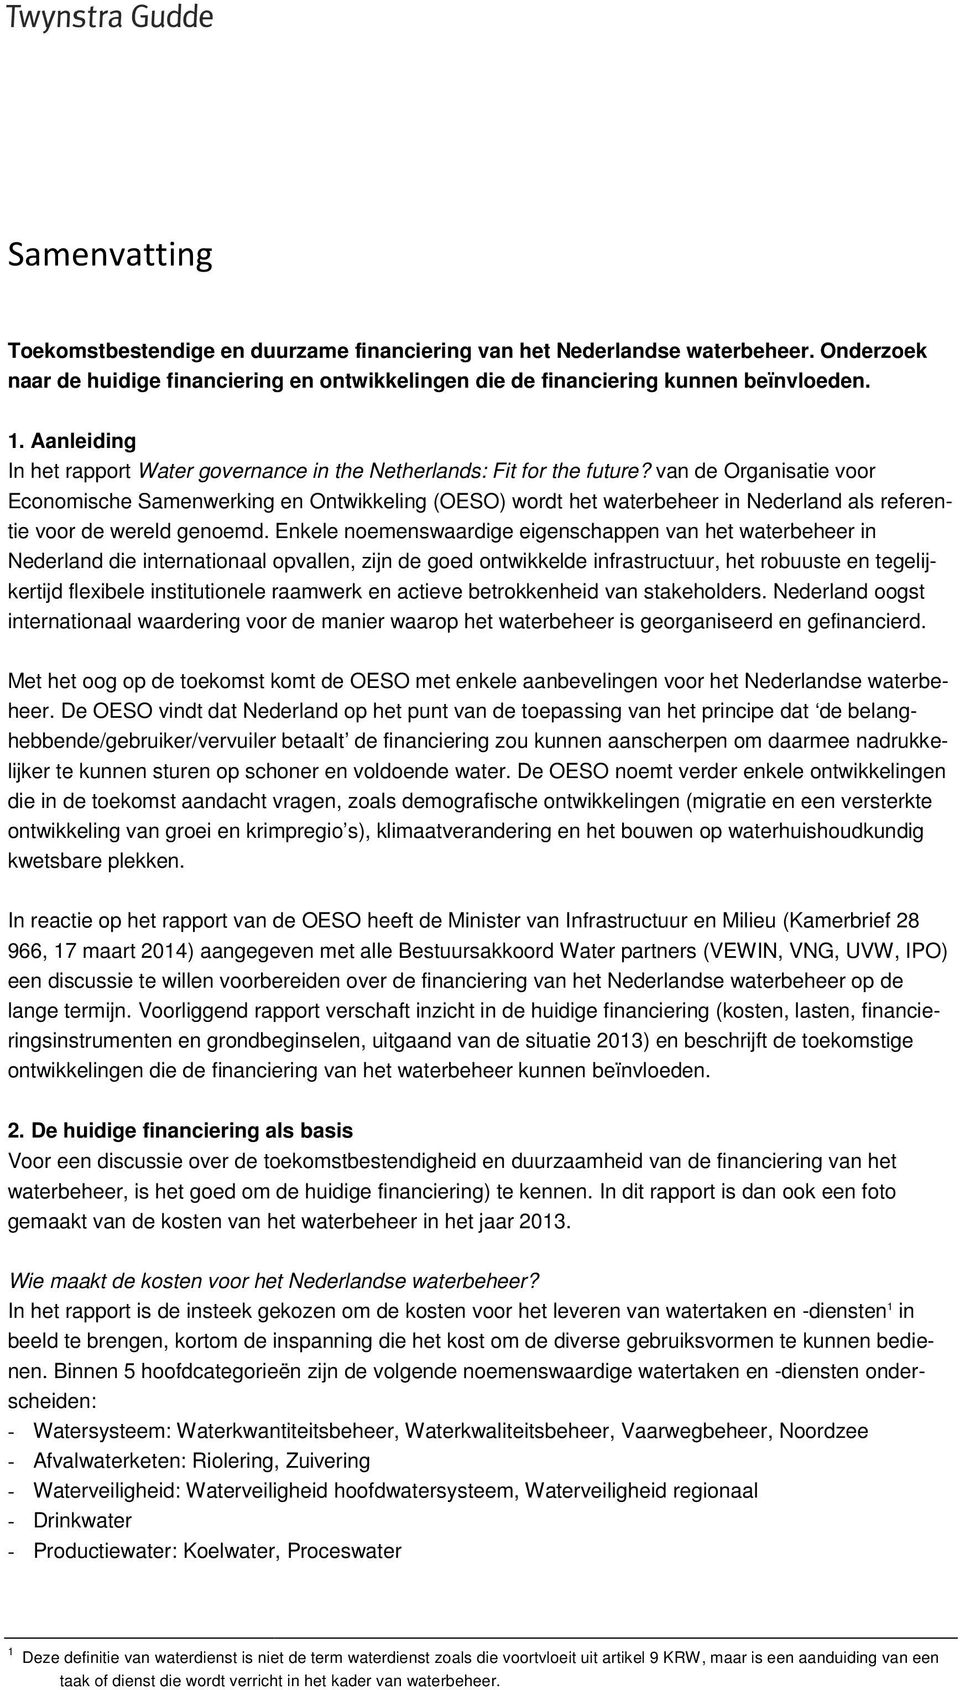 van de Organisatie voor Economische Samenwerking en Ontwikkeling (OESO) wordt het waterbeheer in Nederland als referentie voor de wereld genoemd.